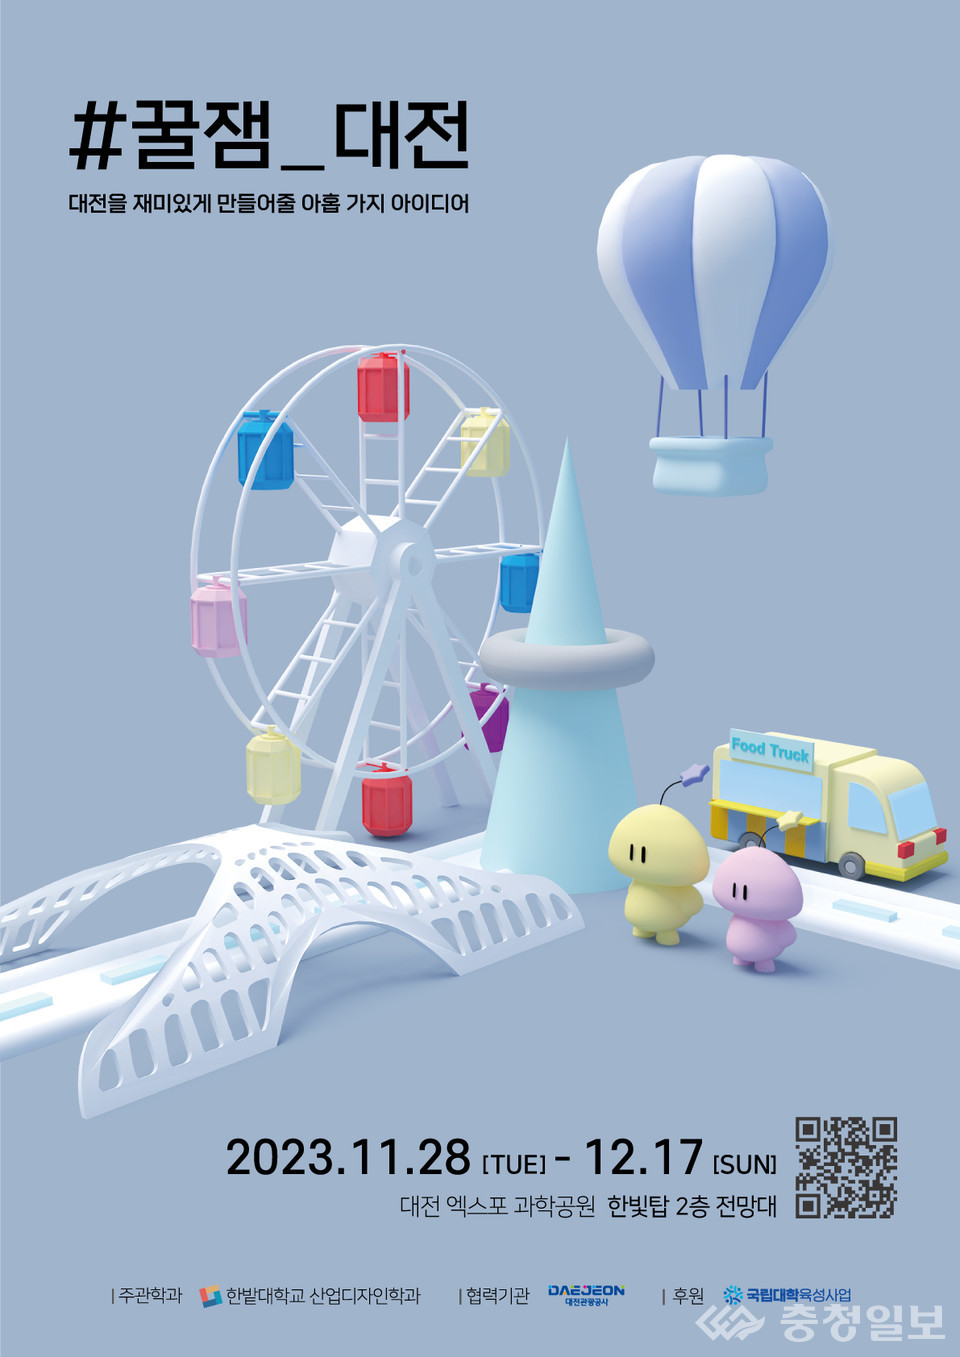 ▲ 국립한밭대학교 산업디자인학과 학생들의 '#꿀잼 대전' 전시회 포스터